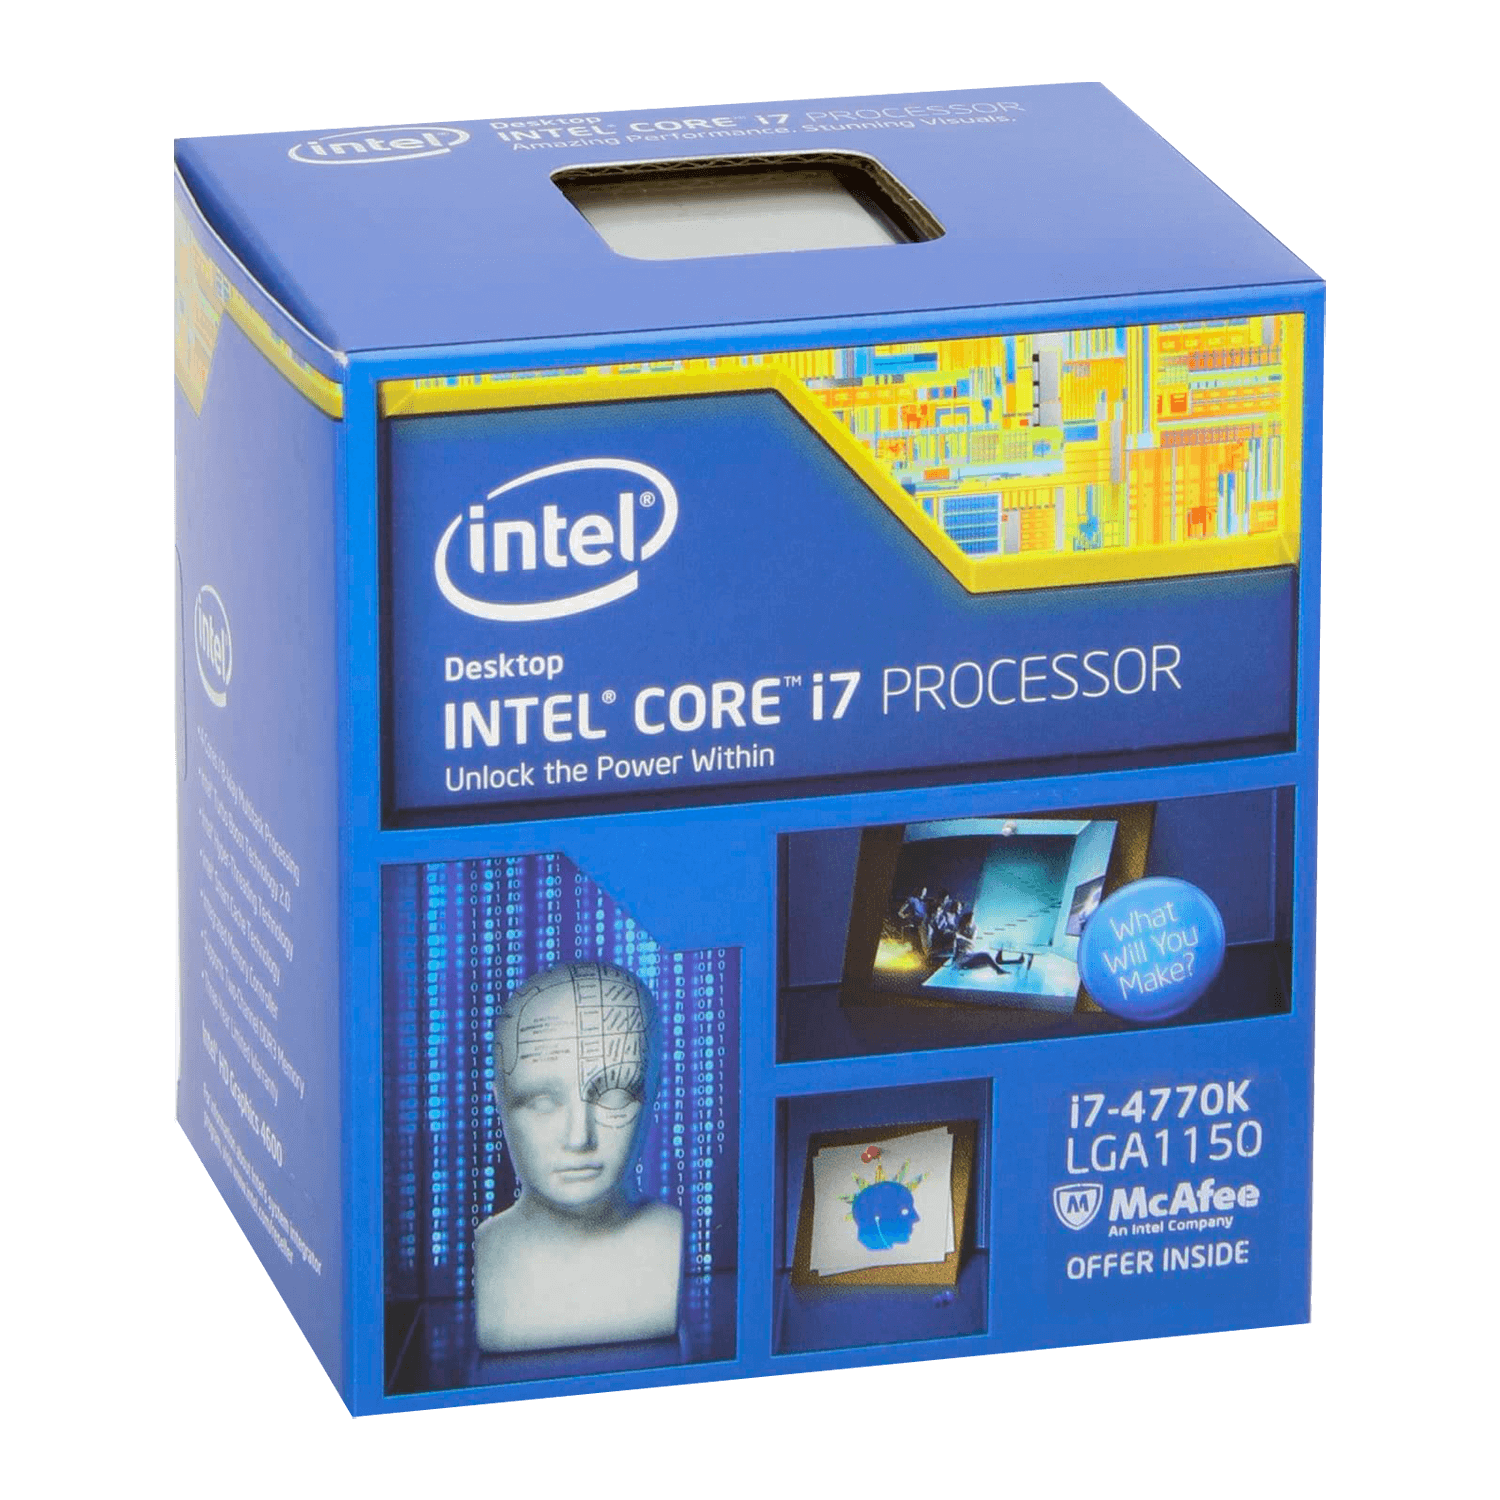 Processador Intel Core i7-4770K Pull OEM Socket 1150 4 Core 8 Threands Cache 8MB